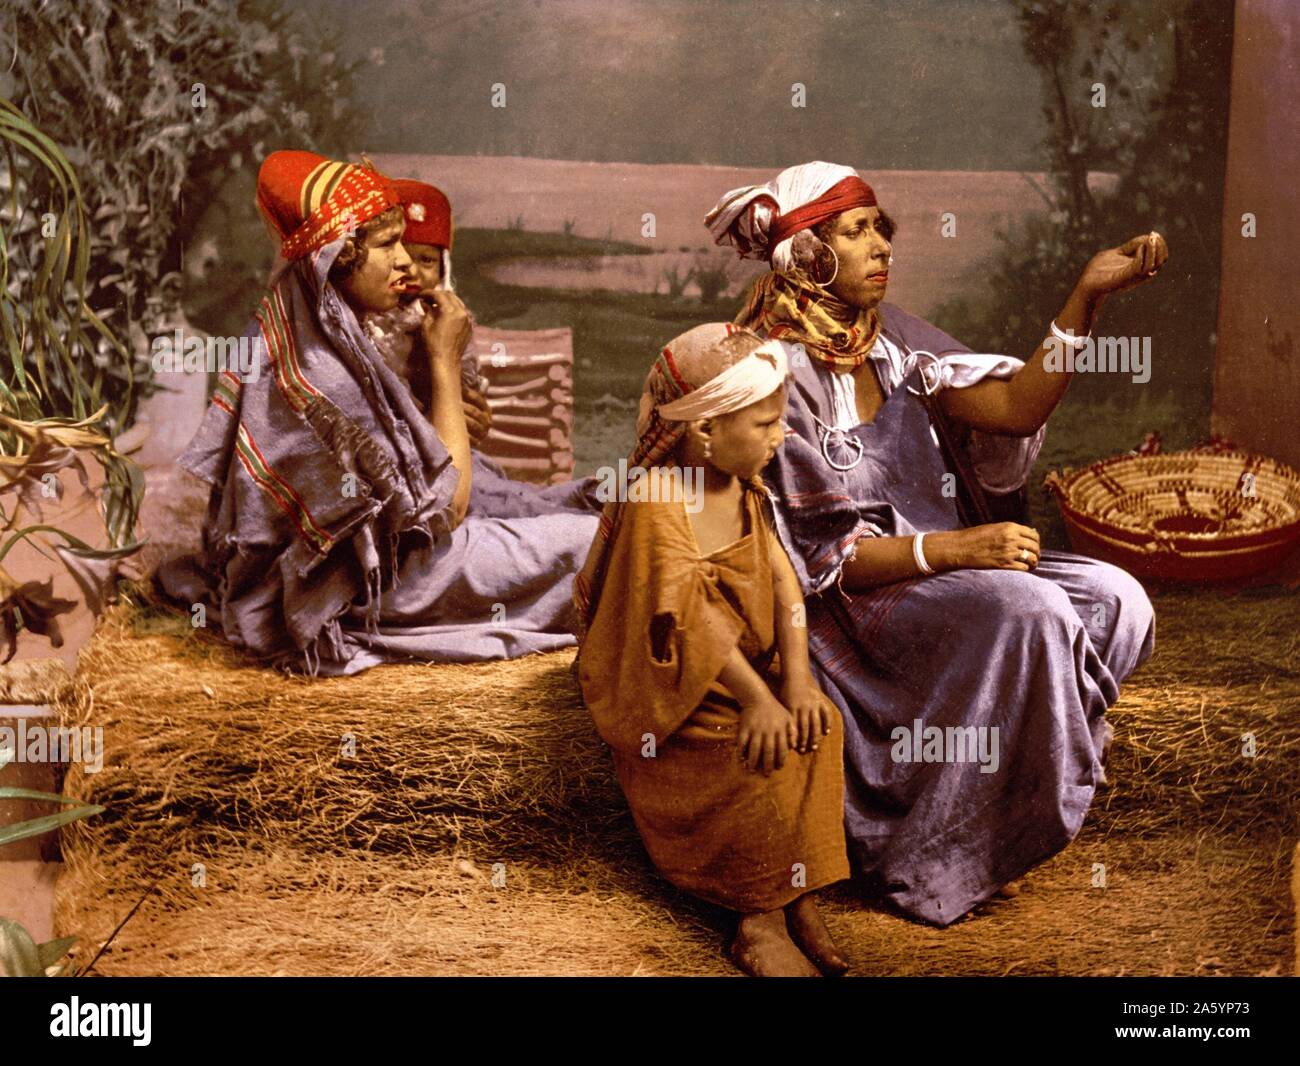 Bedouin beggars and children, Tunis, Tunisia 1899 Stock Photo